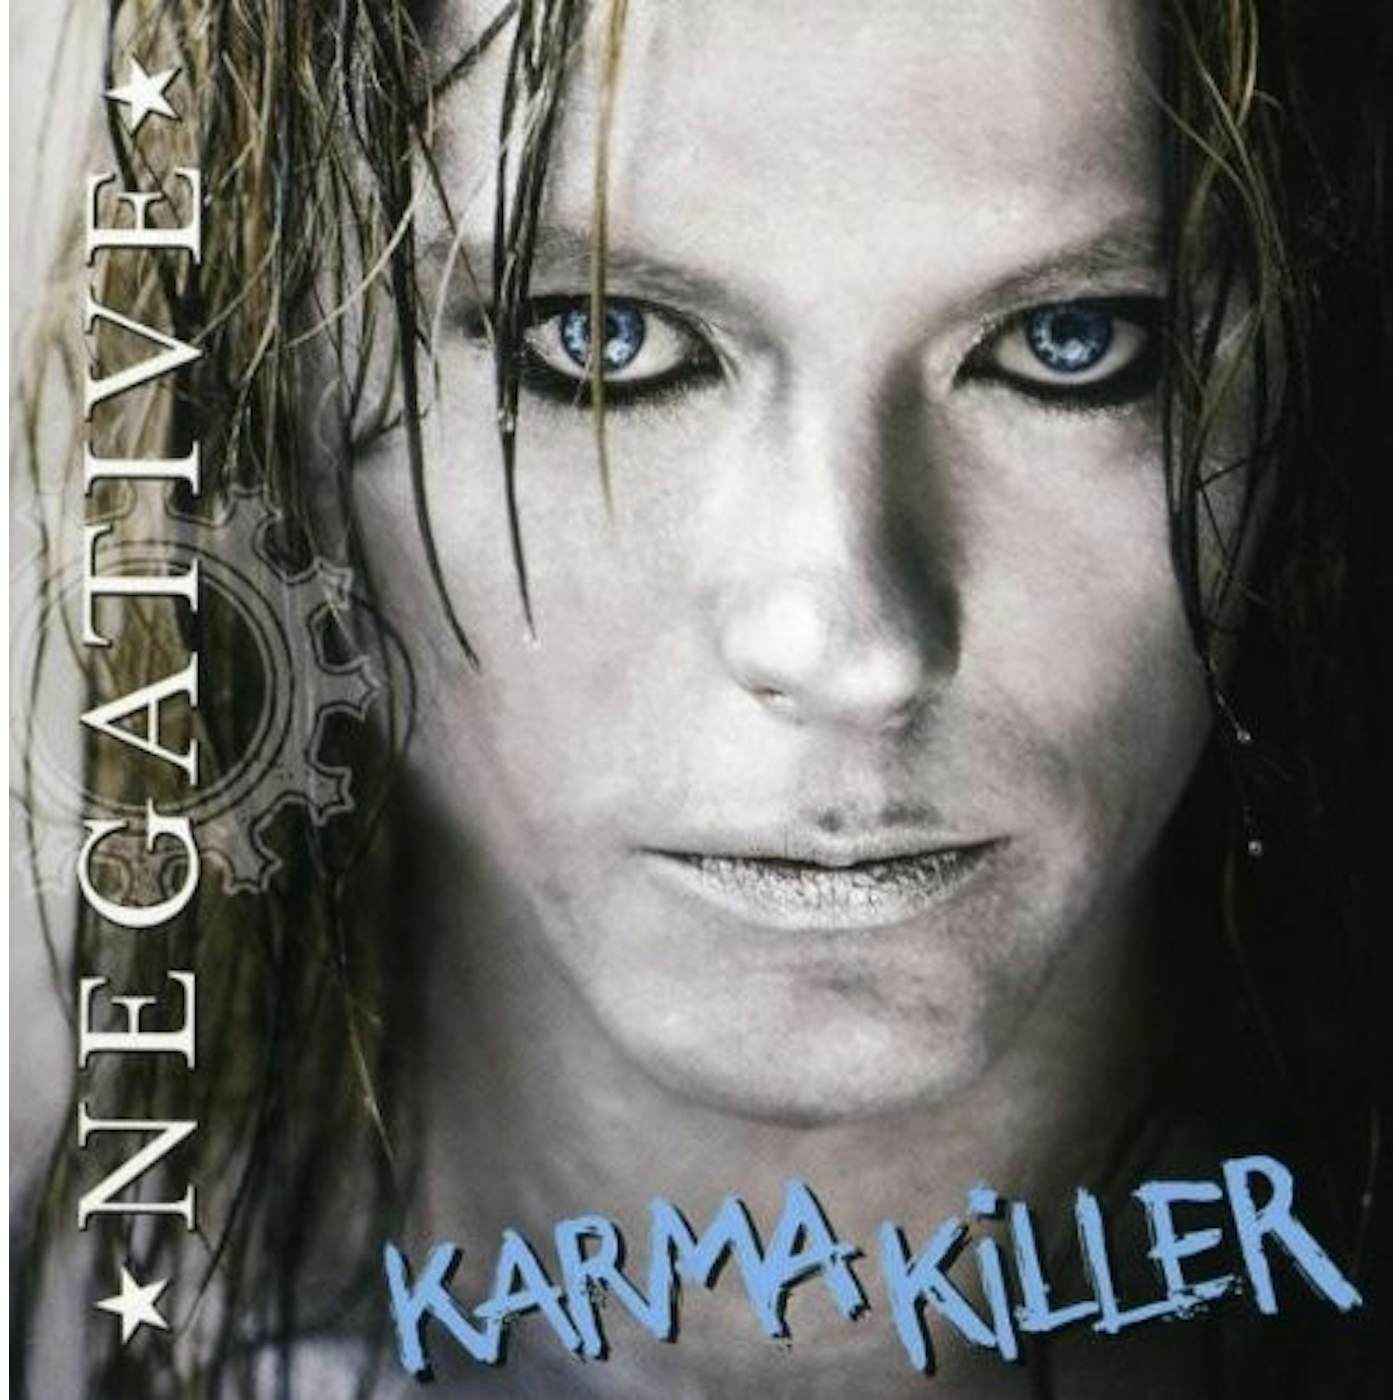 Negative KARMA KILLER CD